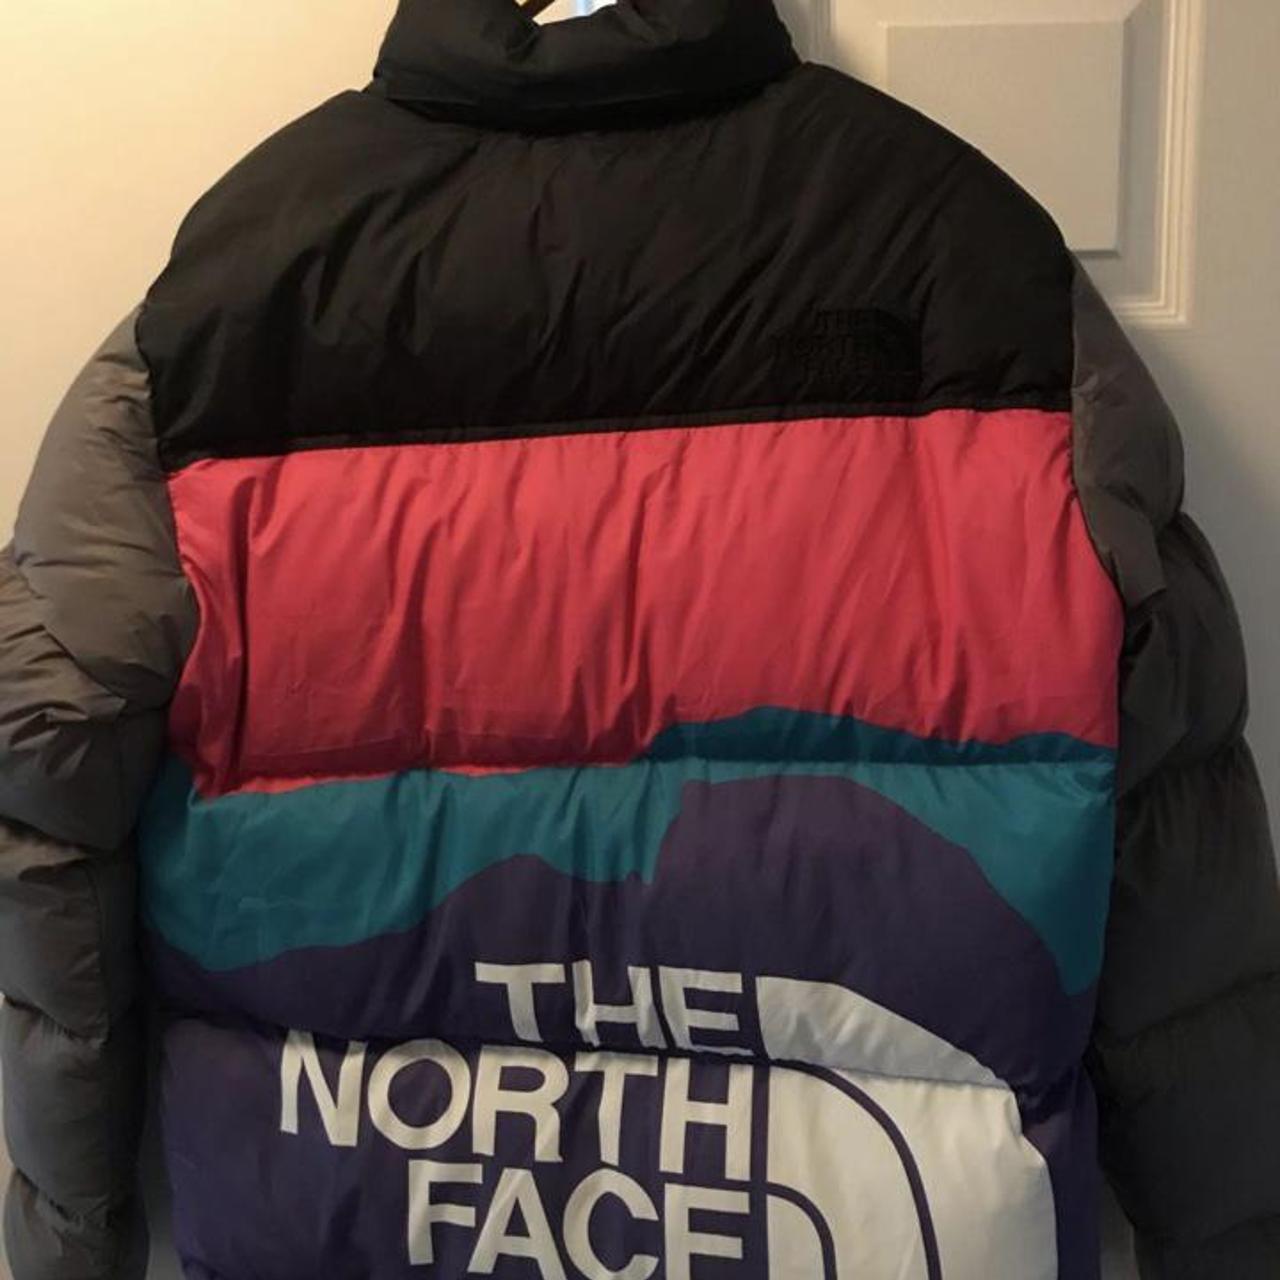 The North Face x Invincible 1996 Retro Nuptse Jacket - Depop